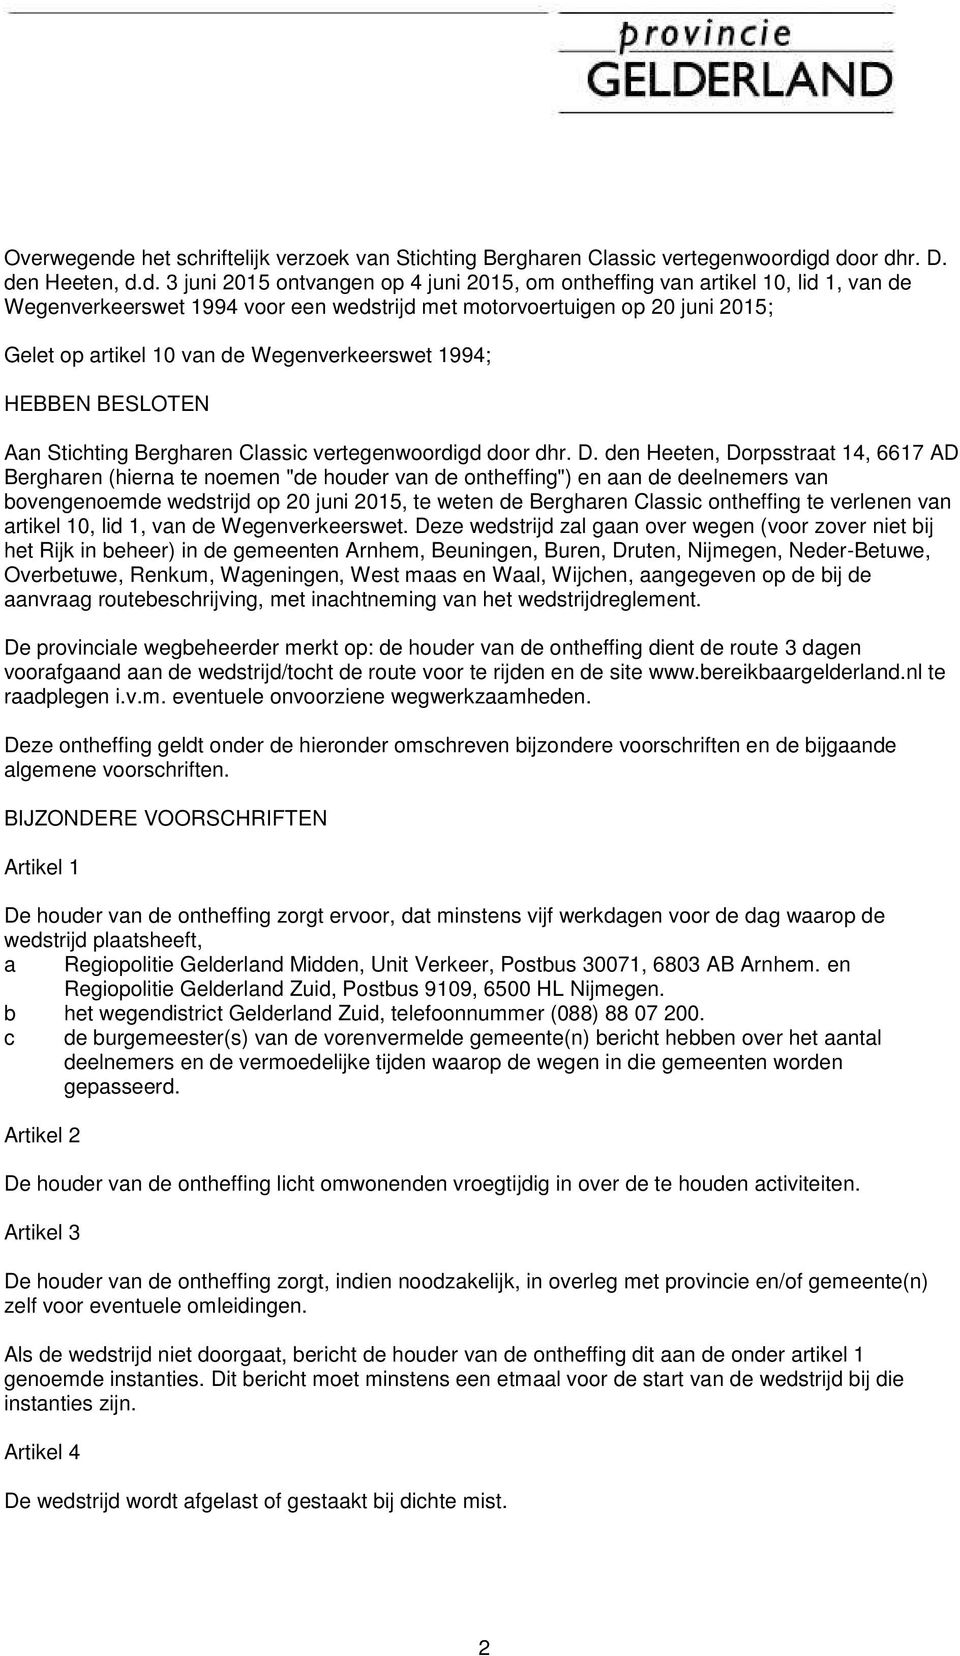 gd door dhr. D. den Heeten, d.d. 3 juni 2015 ontvangen op 4 juni 2015, om ontheffing van artikel 10, lid 1, van de Wegenverkeerswet 1994 voor een wedstrijd met motorvoertuigen op 20 juni 2015; Gelet